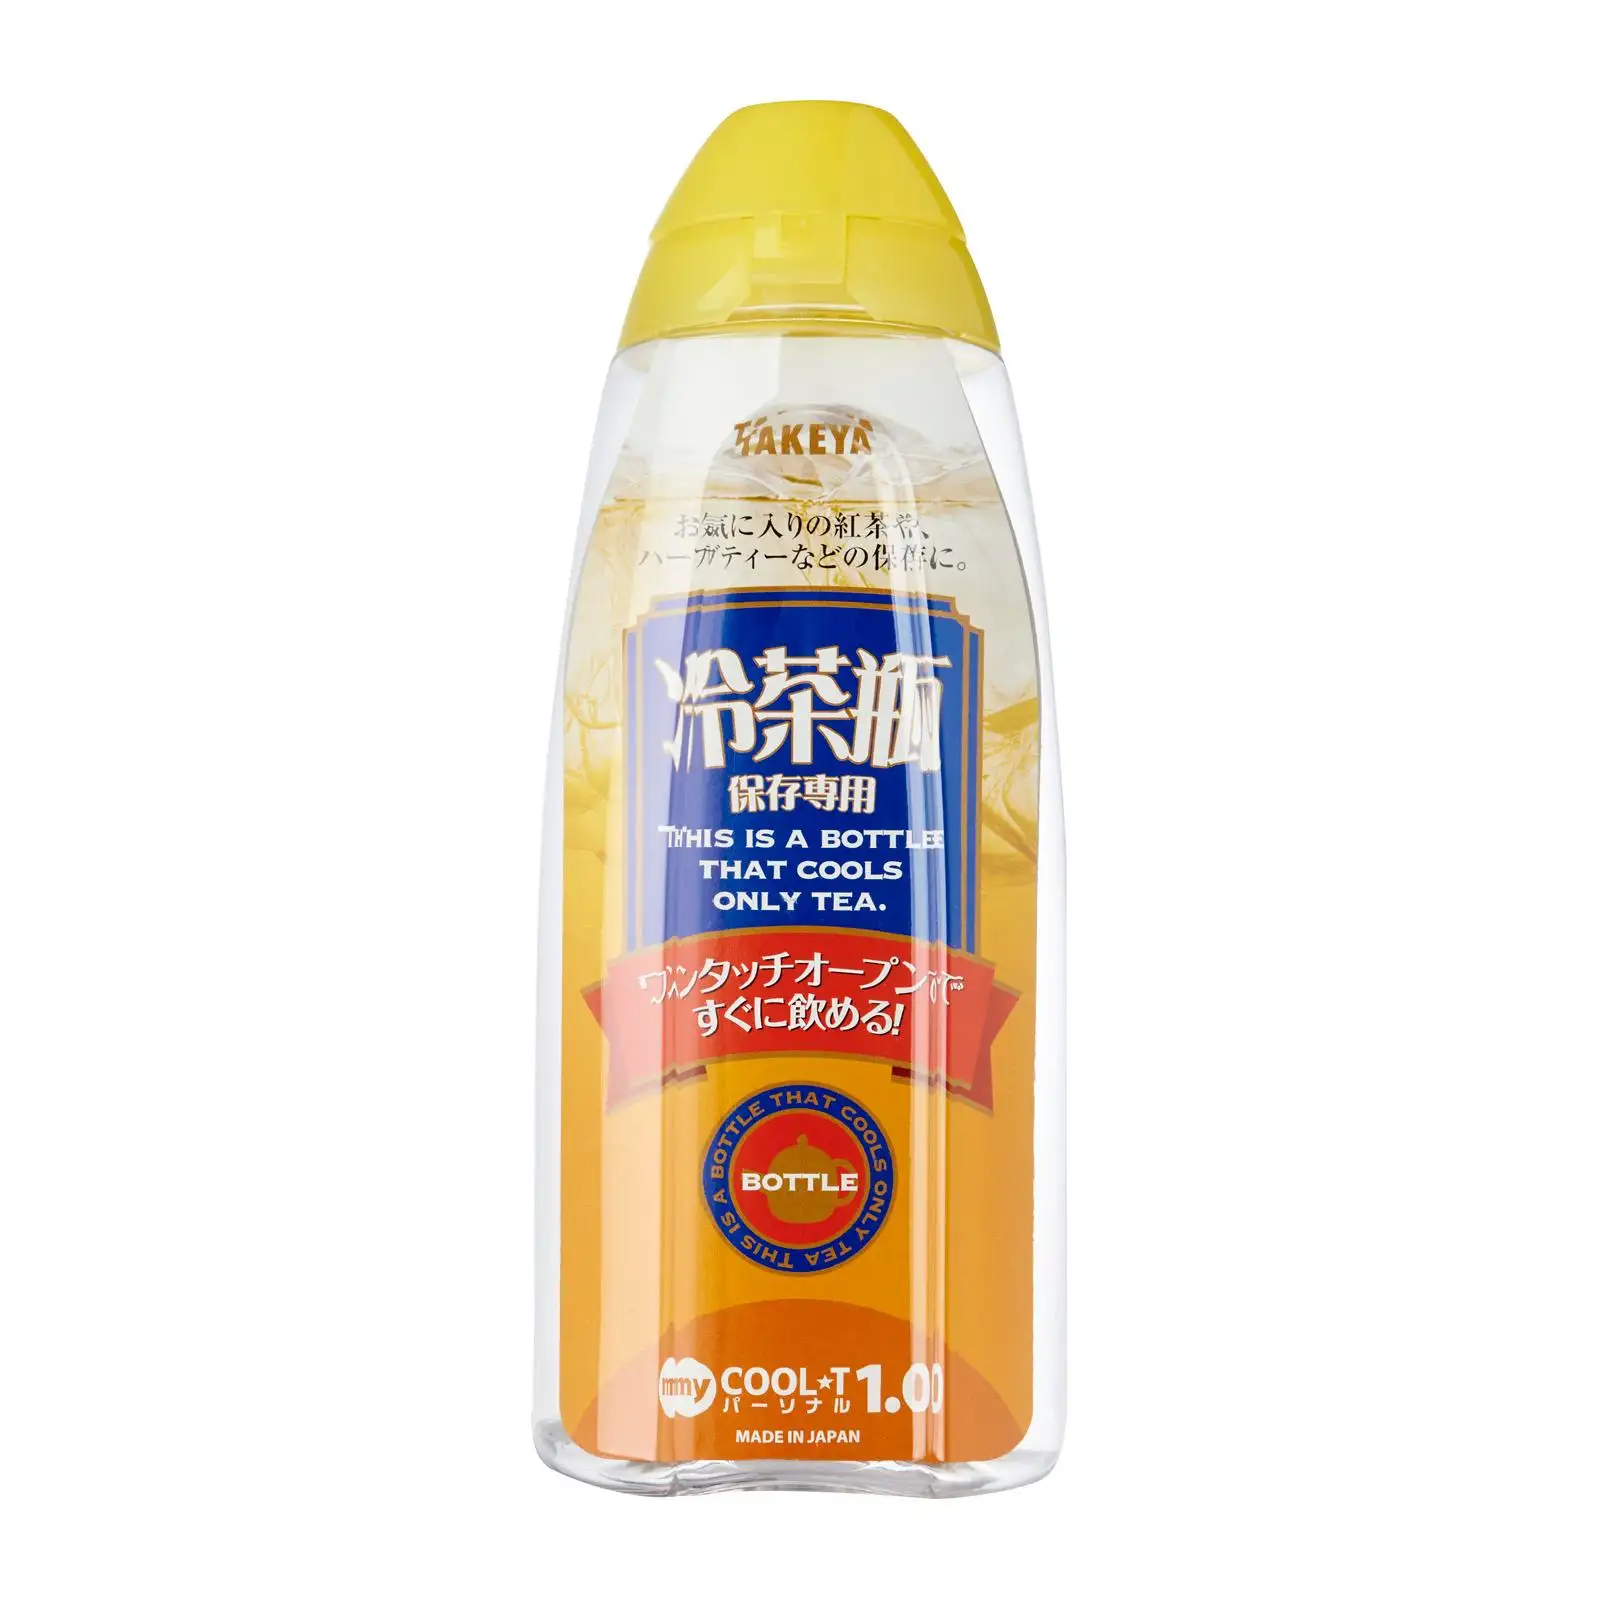 Dễ Dàng Mang Theo Vật Liệu Bán Sỉ Giá Công Suất Màu Vàng Chai Nước Nhựa Takeya Cooler Bottle 1L Từ Nhật Bản